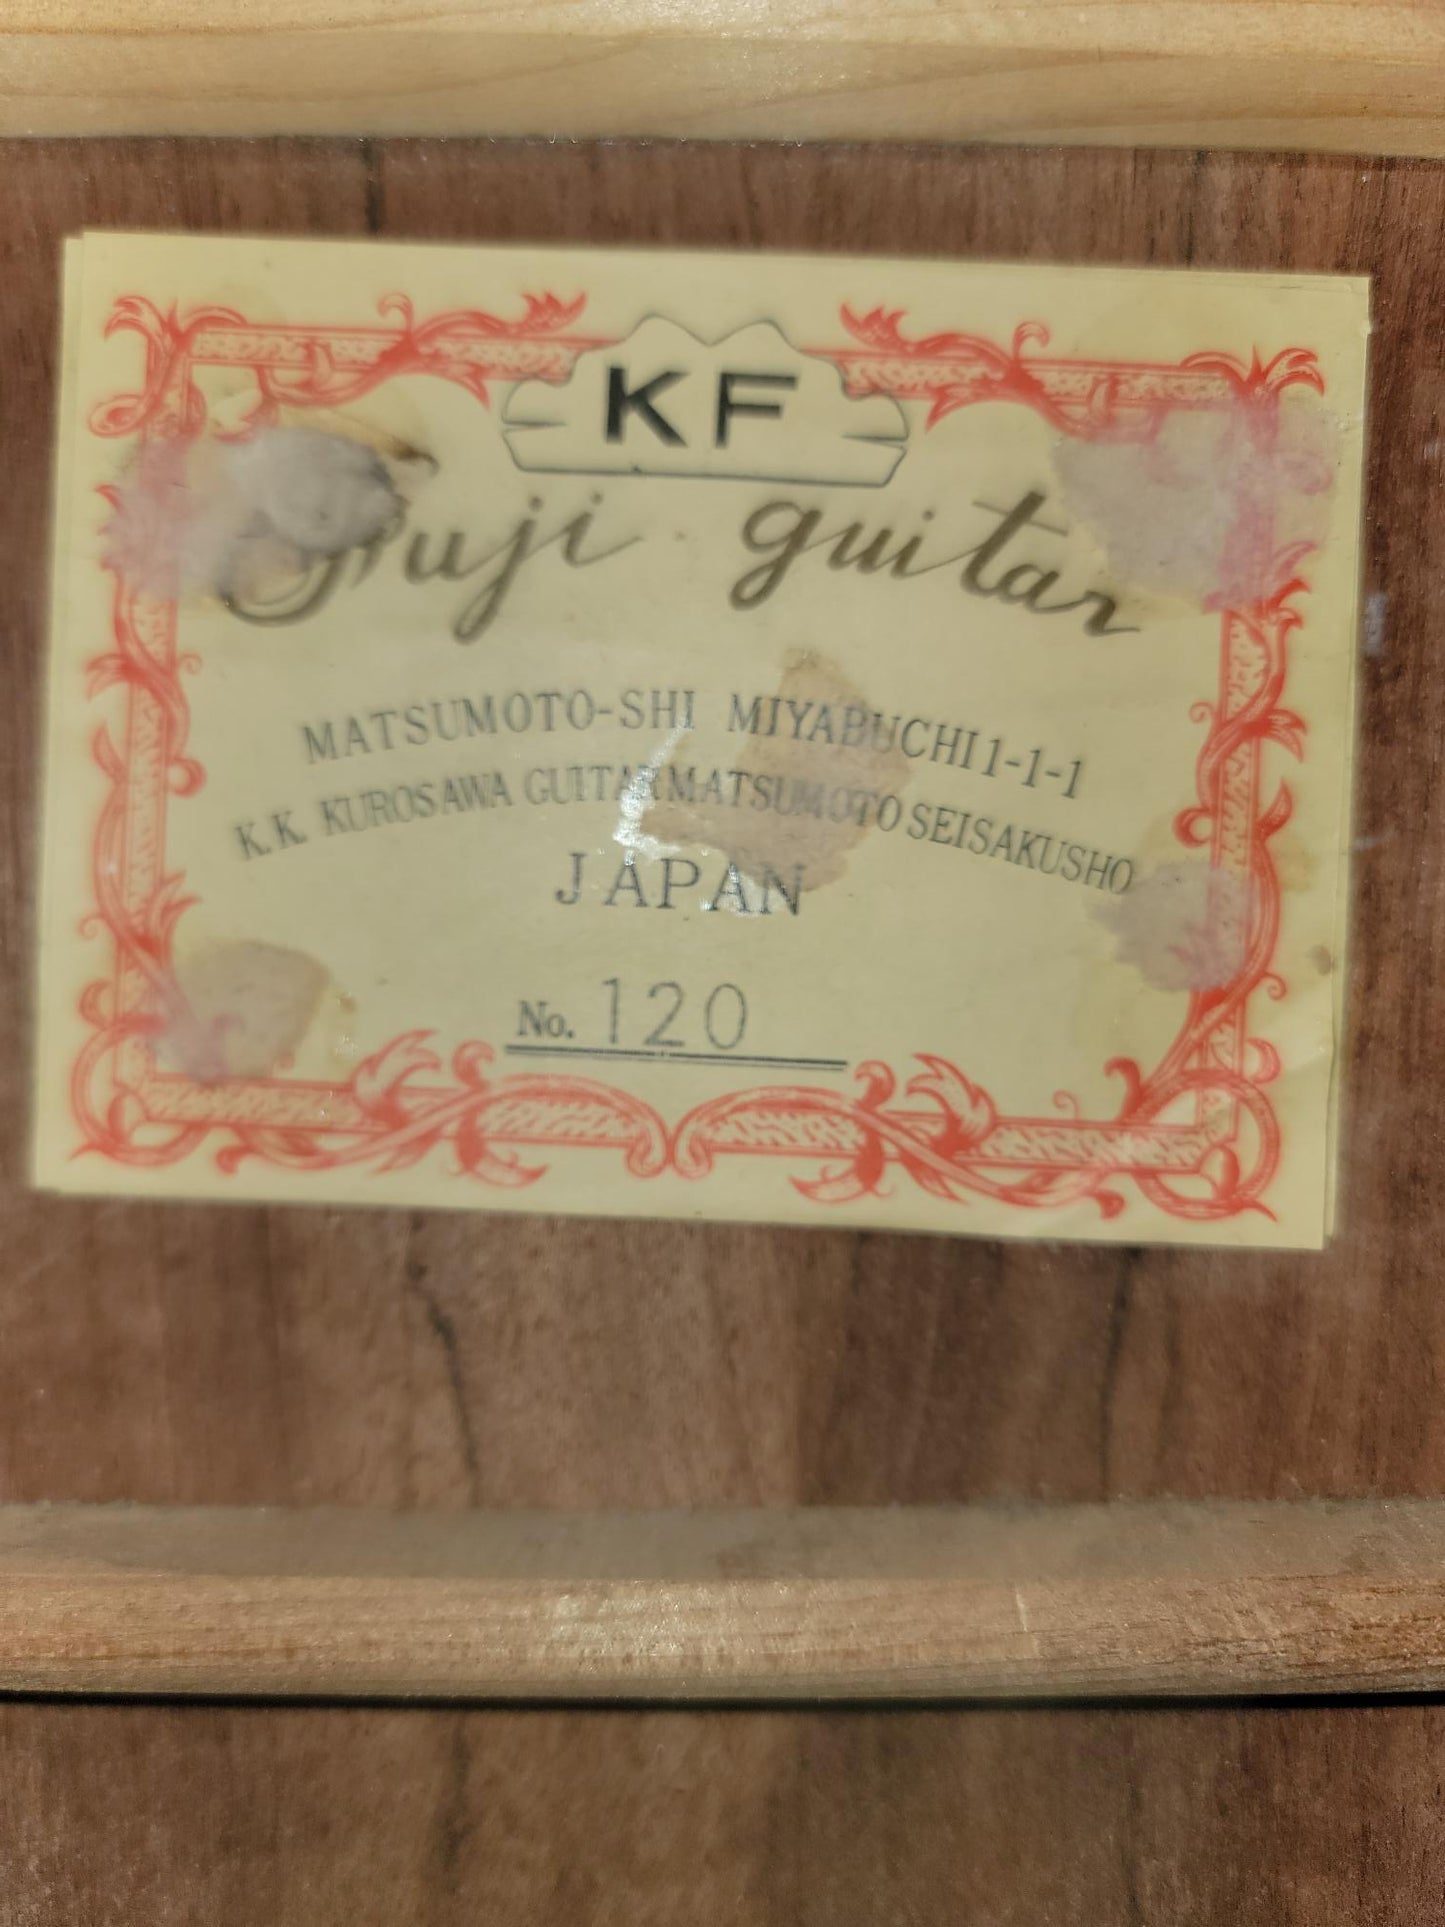 K.F. Fuji Guitar No120